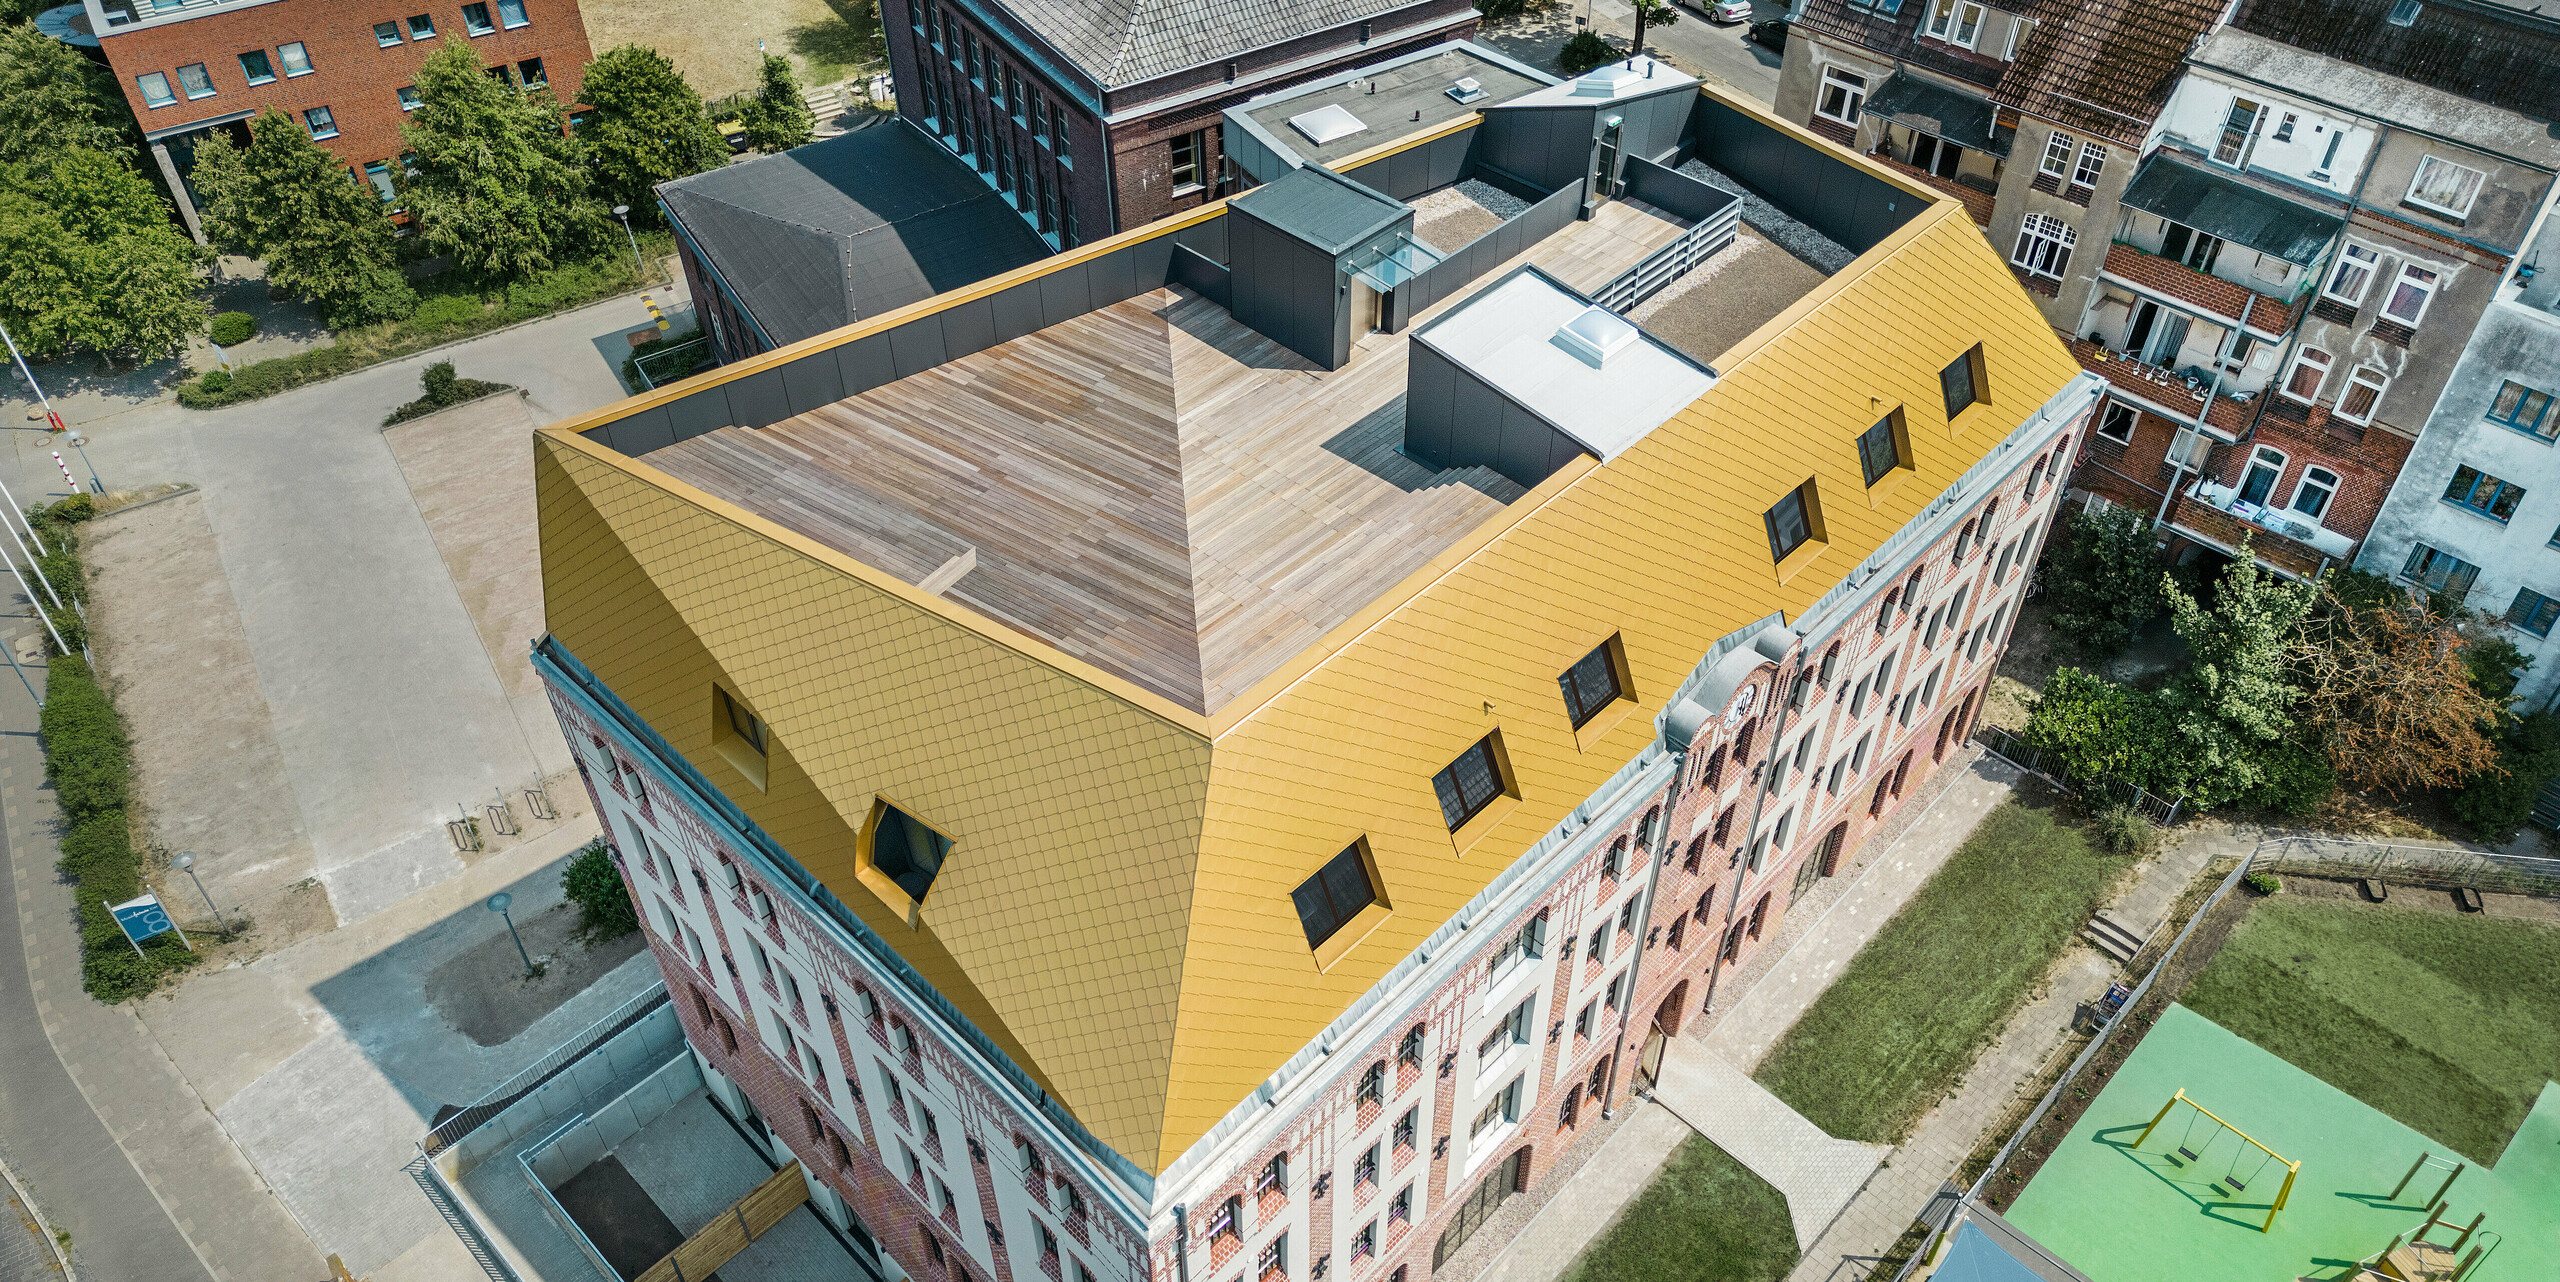 Blick auf das Dach des Studentenwohnheims "The Station" in Kiel. Der Blick von oben zeigt die edlen Aluminiumrauten von PREFA in der Farbe Mayagold am Dach des Gebäudes mit der geknickten Dachlandschaft.